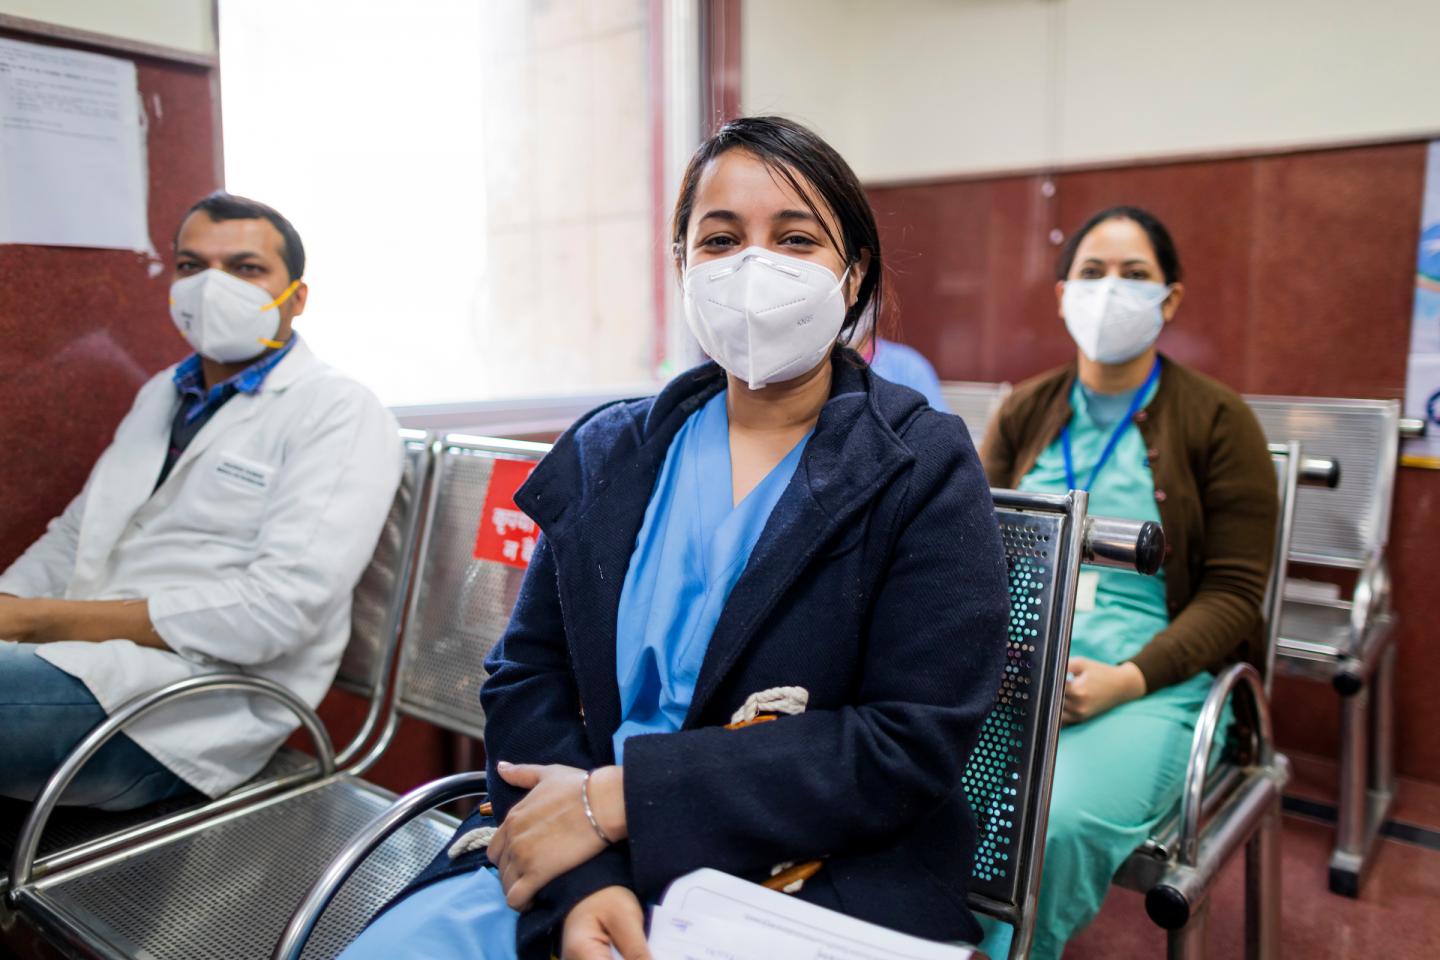 भारत में कोरोना संकट: लगातार दूसरे दिन रिकॉर्ड 4.14 लाख से ज्यादा केस, लगभग 3.32 लाख लोग स्वस्थ